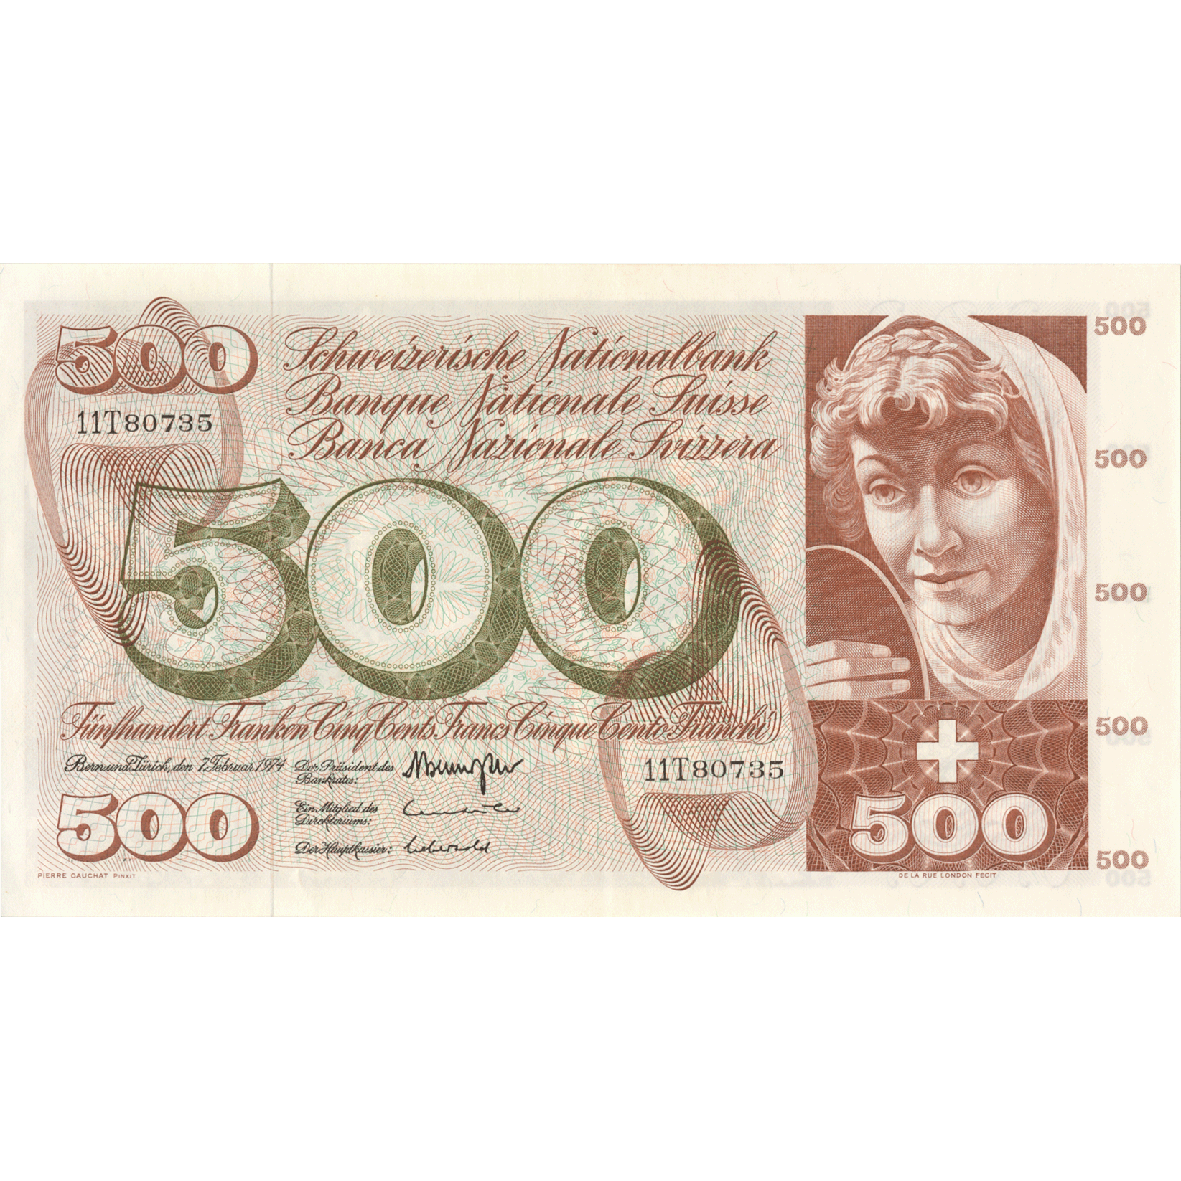 Schweizerische Eidgenossenschaft, 500 Franken (5. Banknotenserie, in Kurs 1956-1980) (obverse)